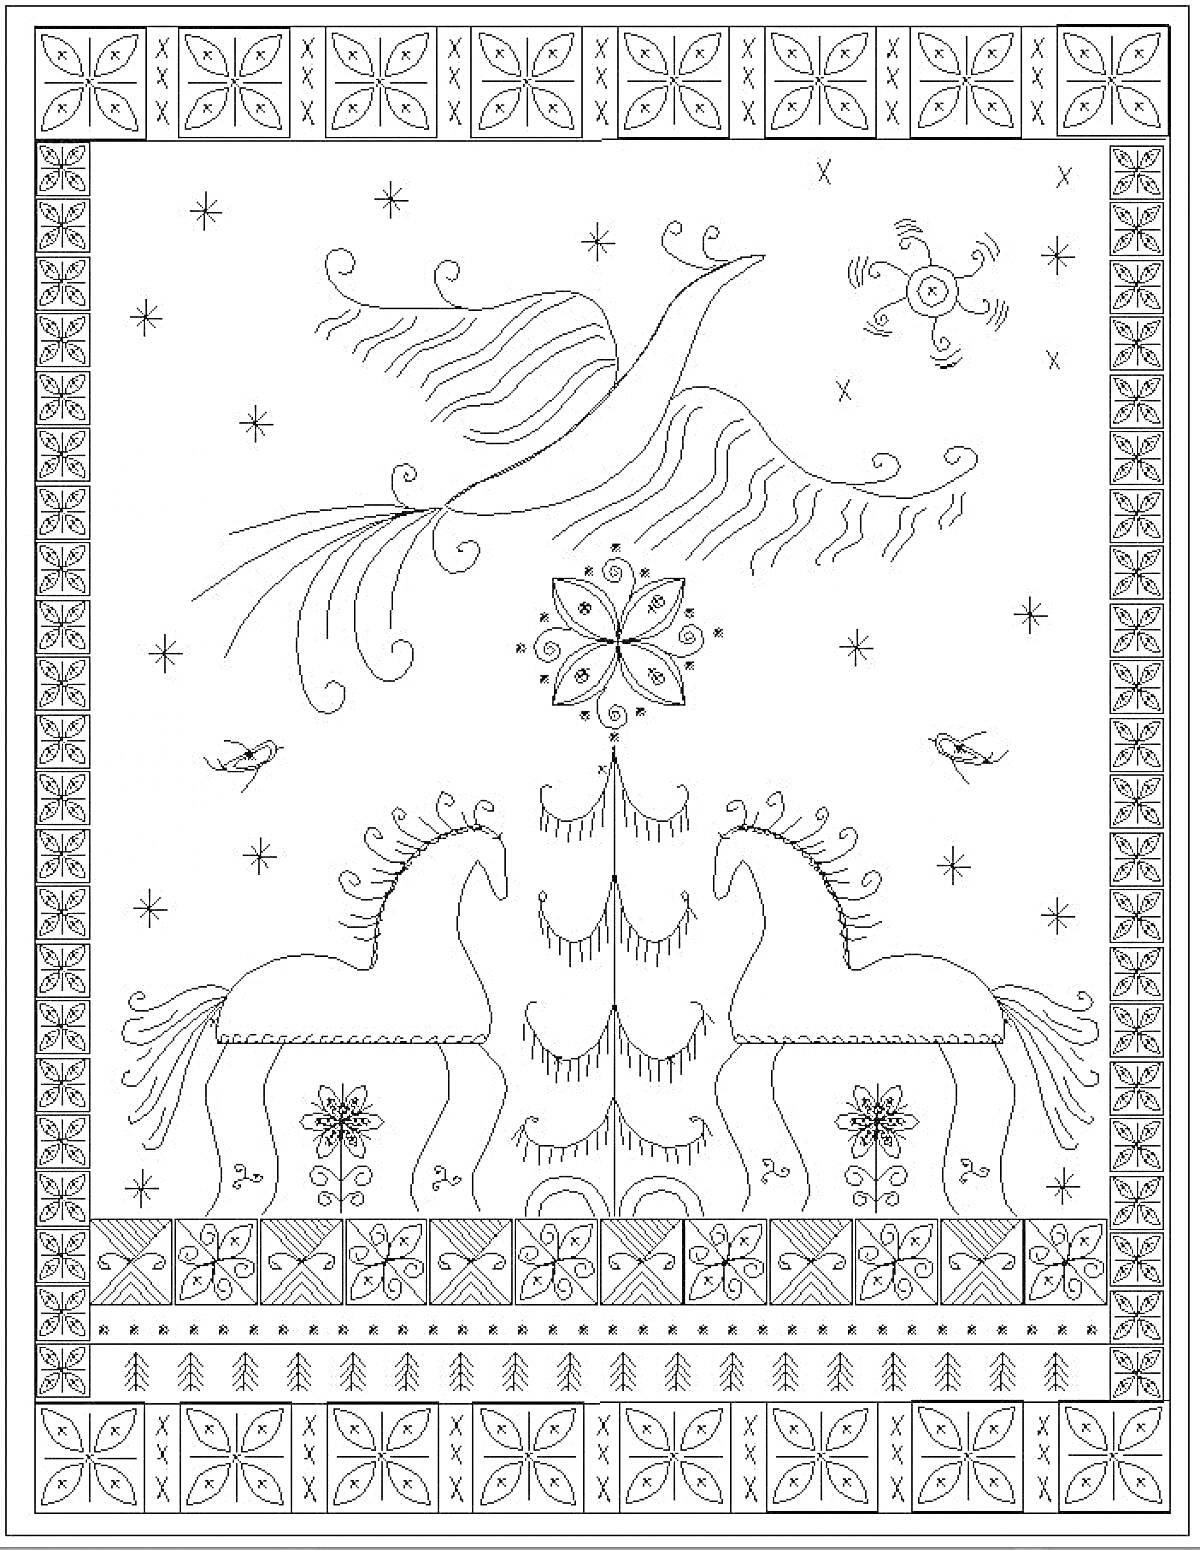 Конь, дерево, птица, звезды, цветочный орнамент, круглый символ, бордюр с узорами